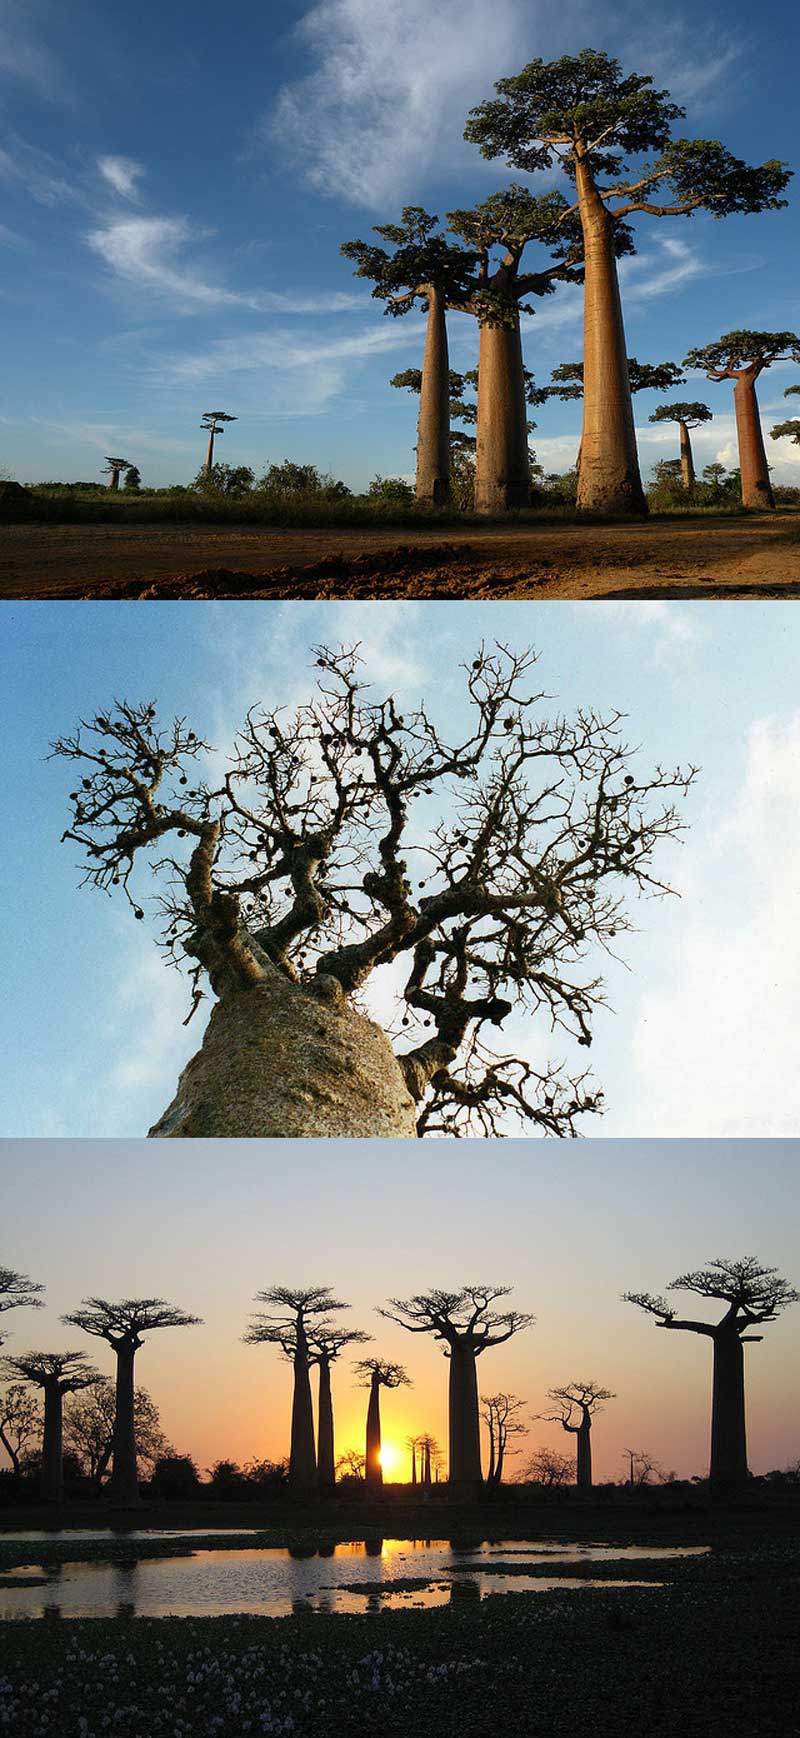 Fakta: Der findes seks arter af baobabtræer på Madagaskar.